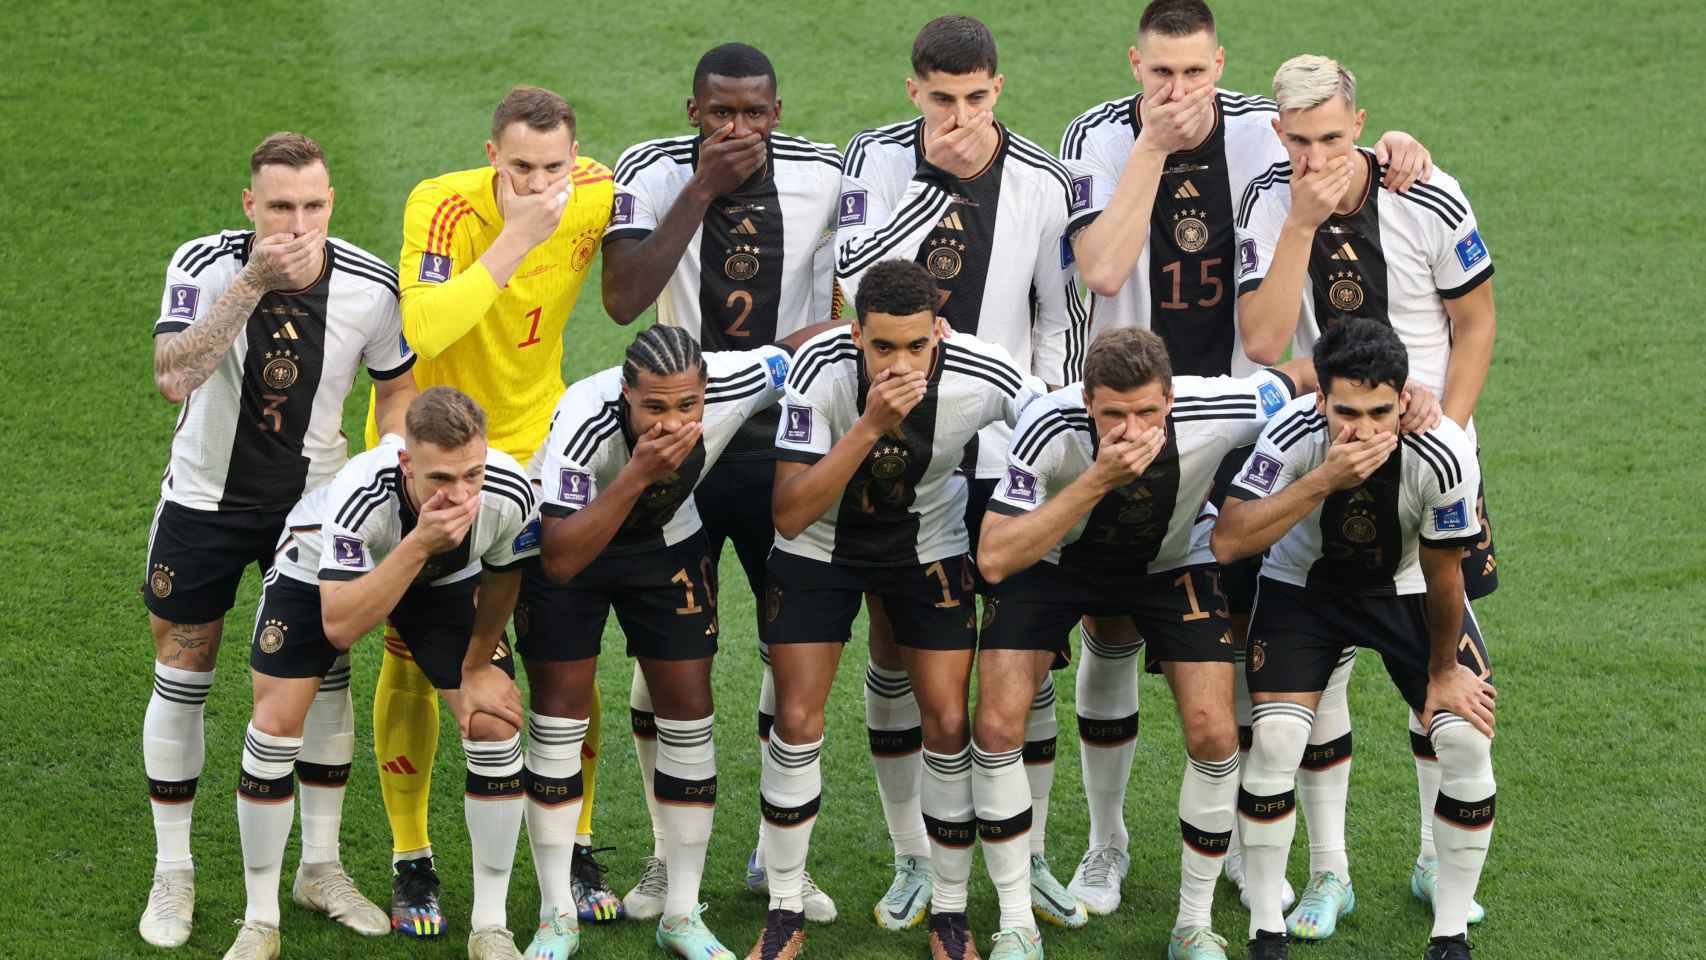 Protesta  los jugadores de Alemania se han tapado la boca antes de jugar contra Japón / REDES